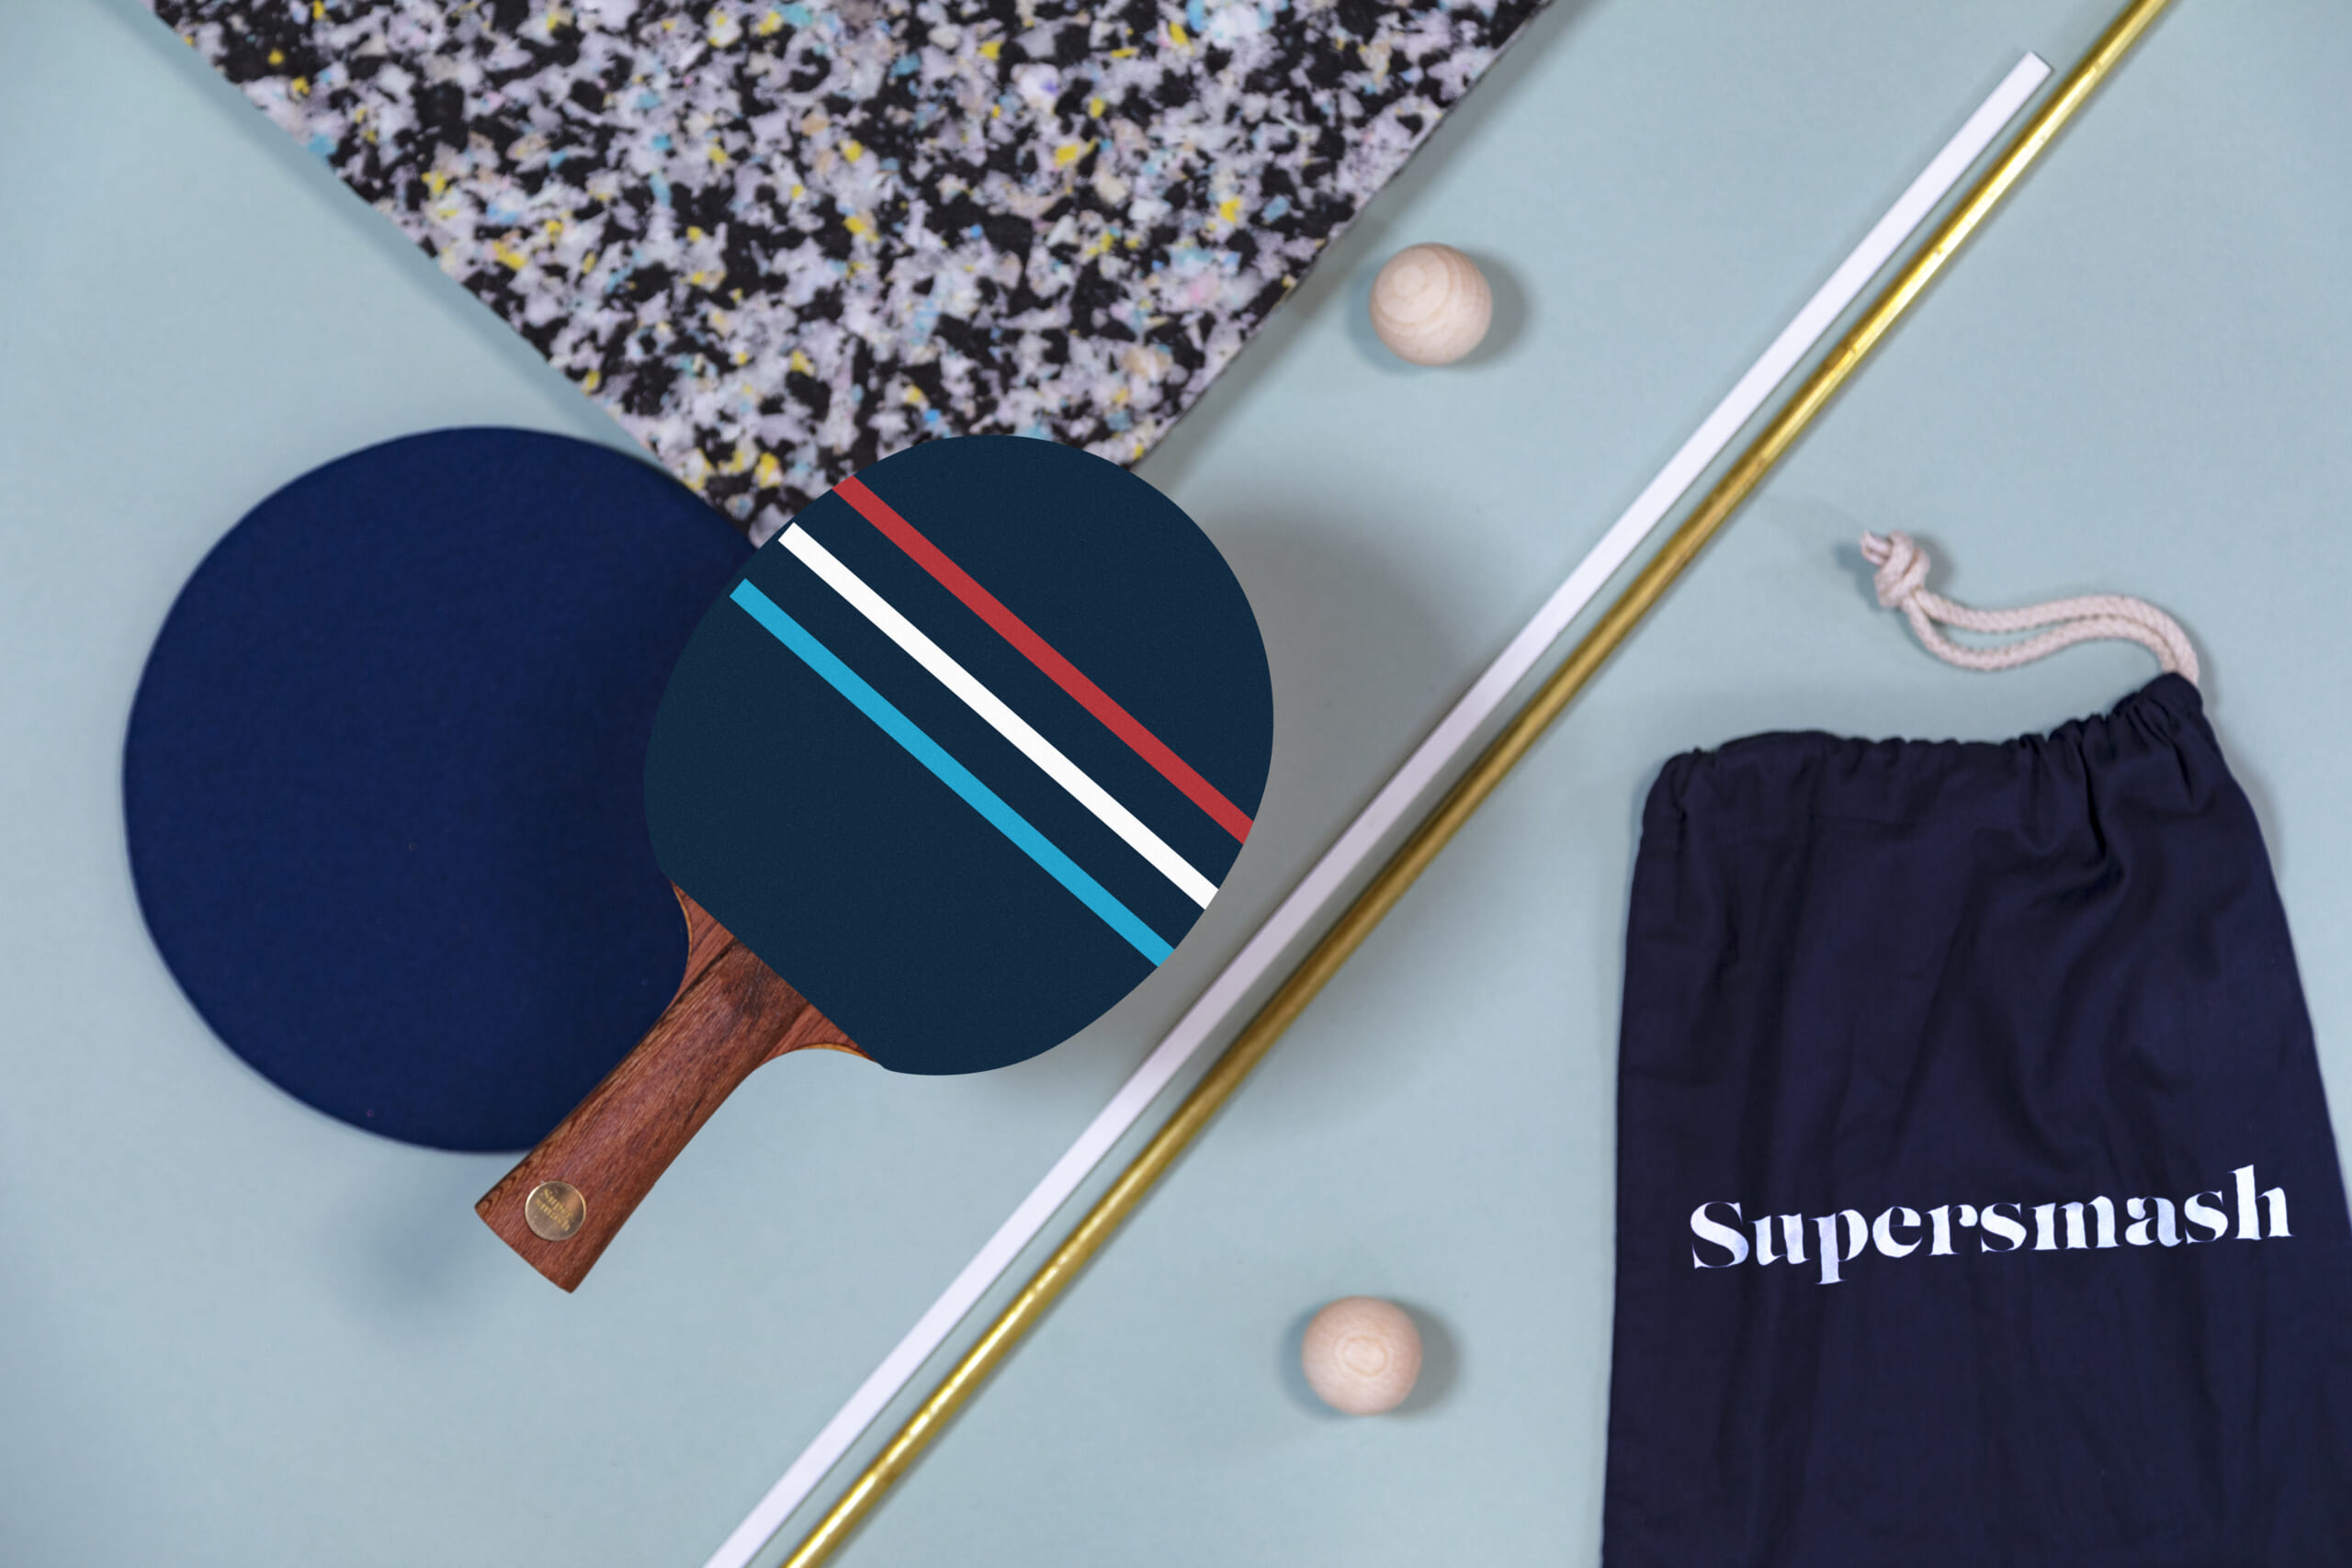 Supermash lance des raquettes de Ping-Pong inédites